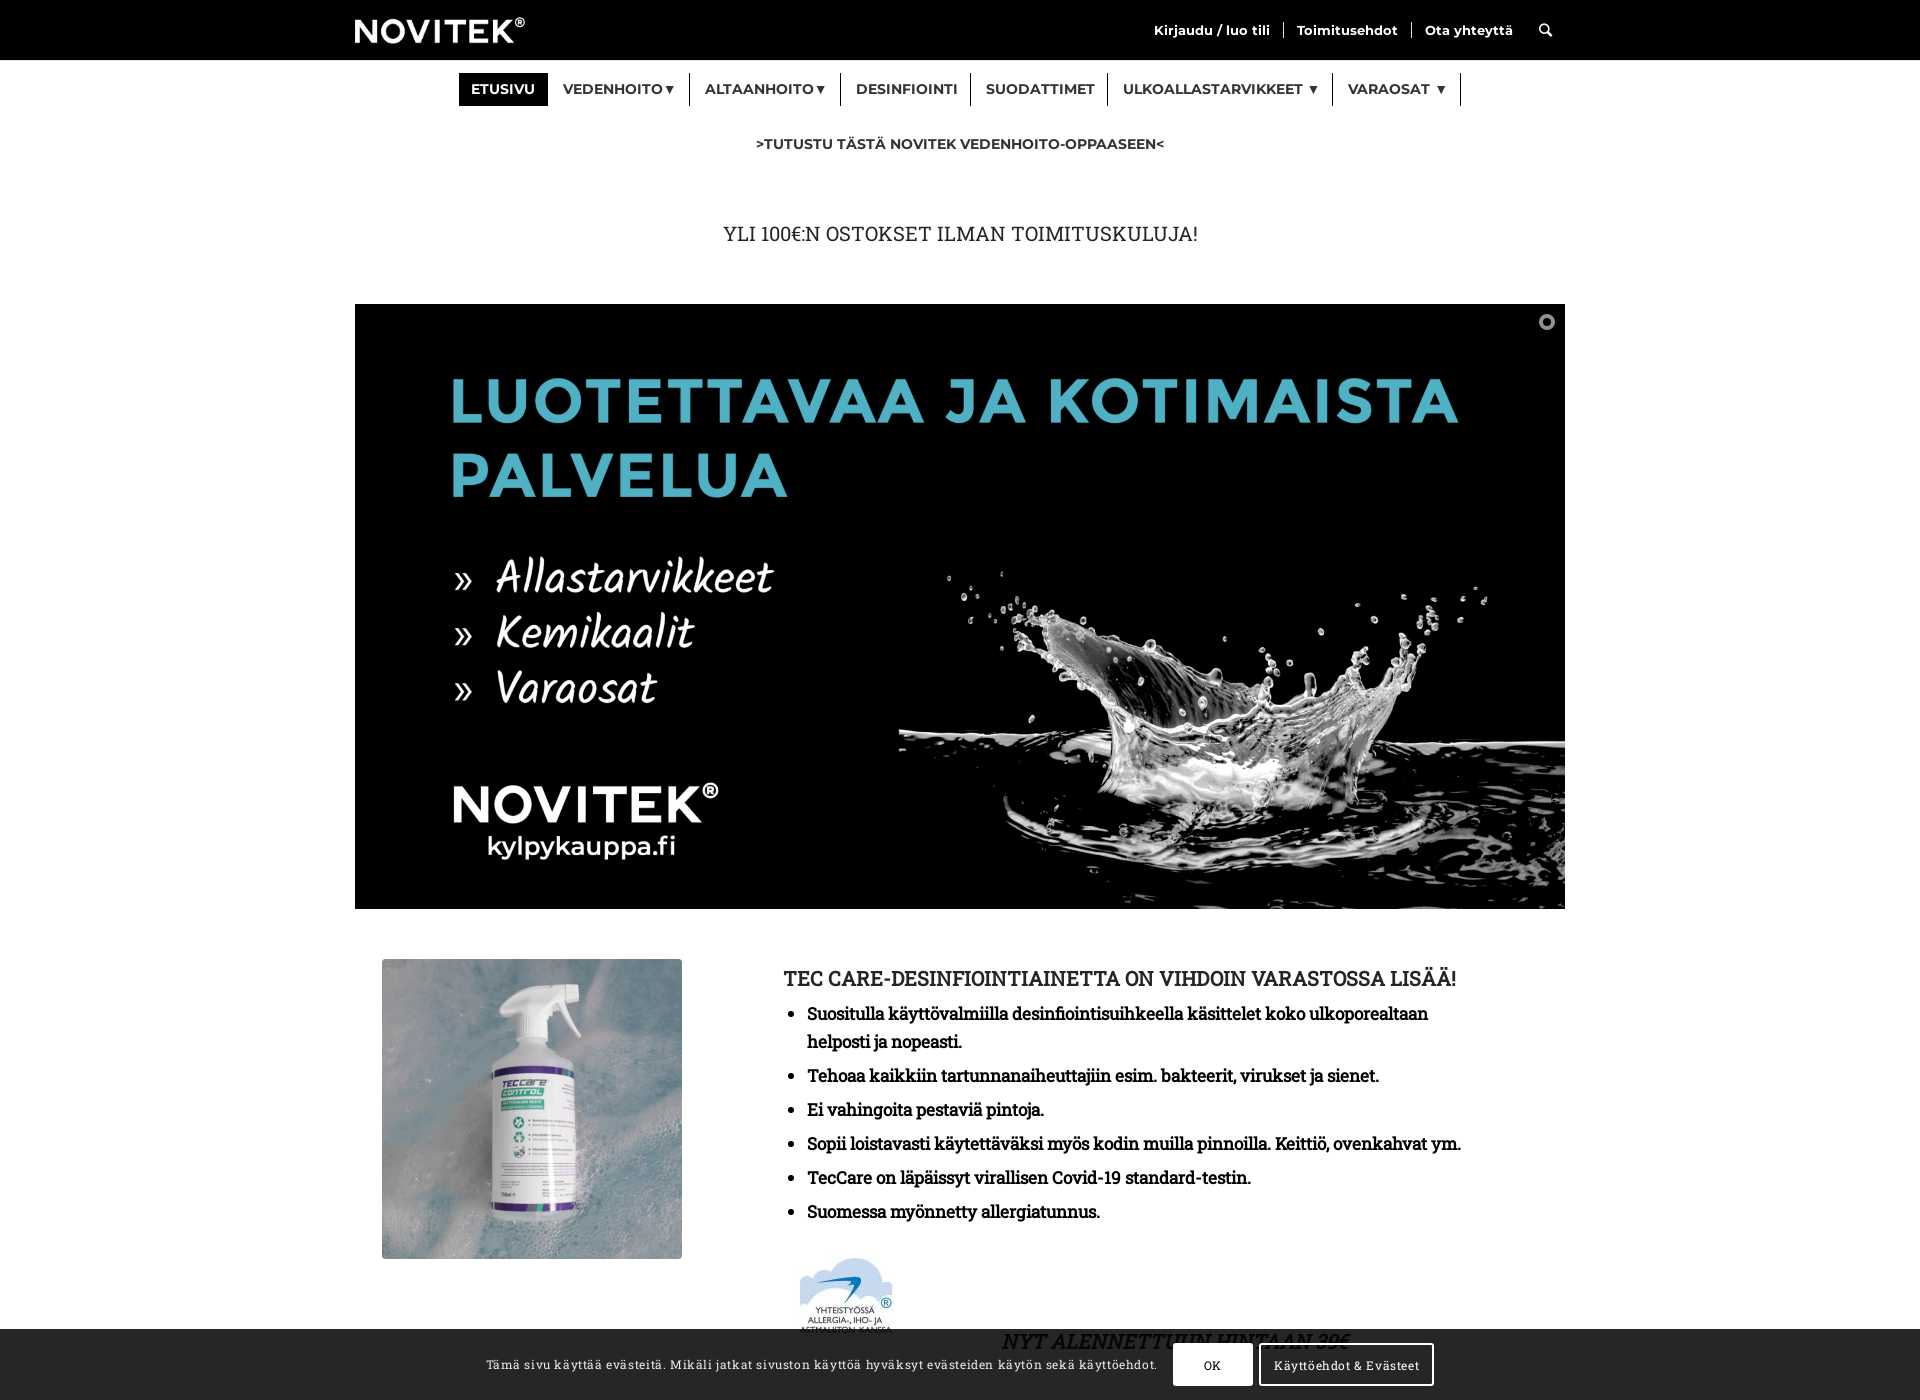 Näyttökuva kylpykauppa.fi